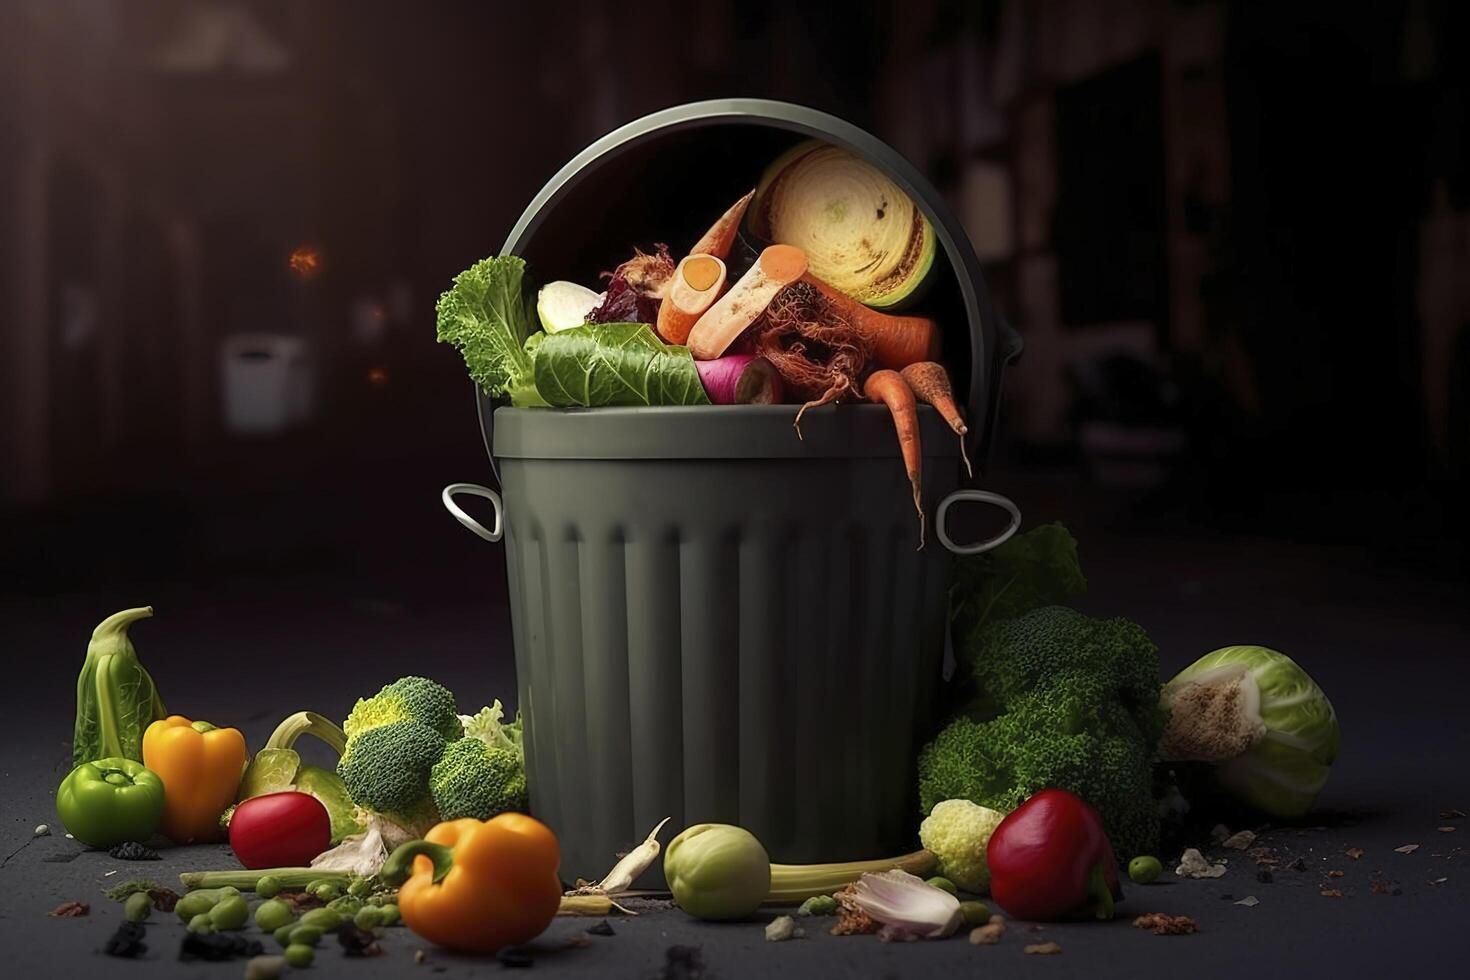 niet opgegeten ongebruikt verwend groenten gegooid in de uitschot container. voedsel verlies en voedsel afval. verminderen verspild voedsel, composteren, verrot groenten in een afval. ai gegenereerd. foto